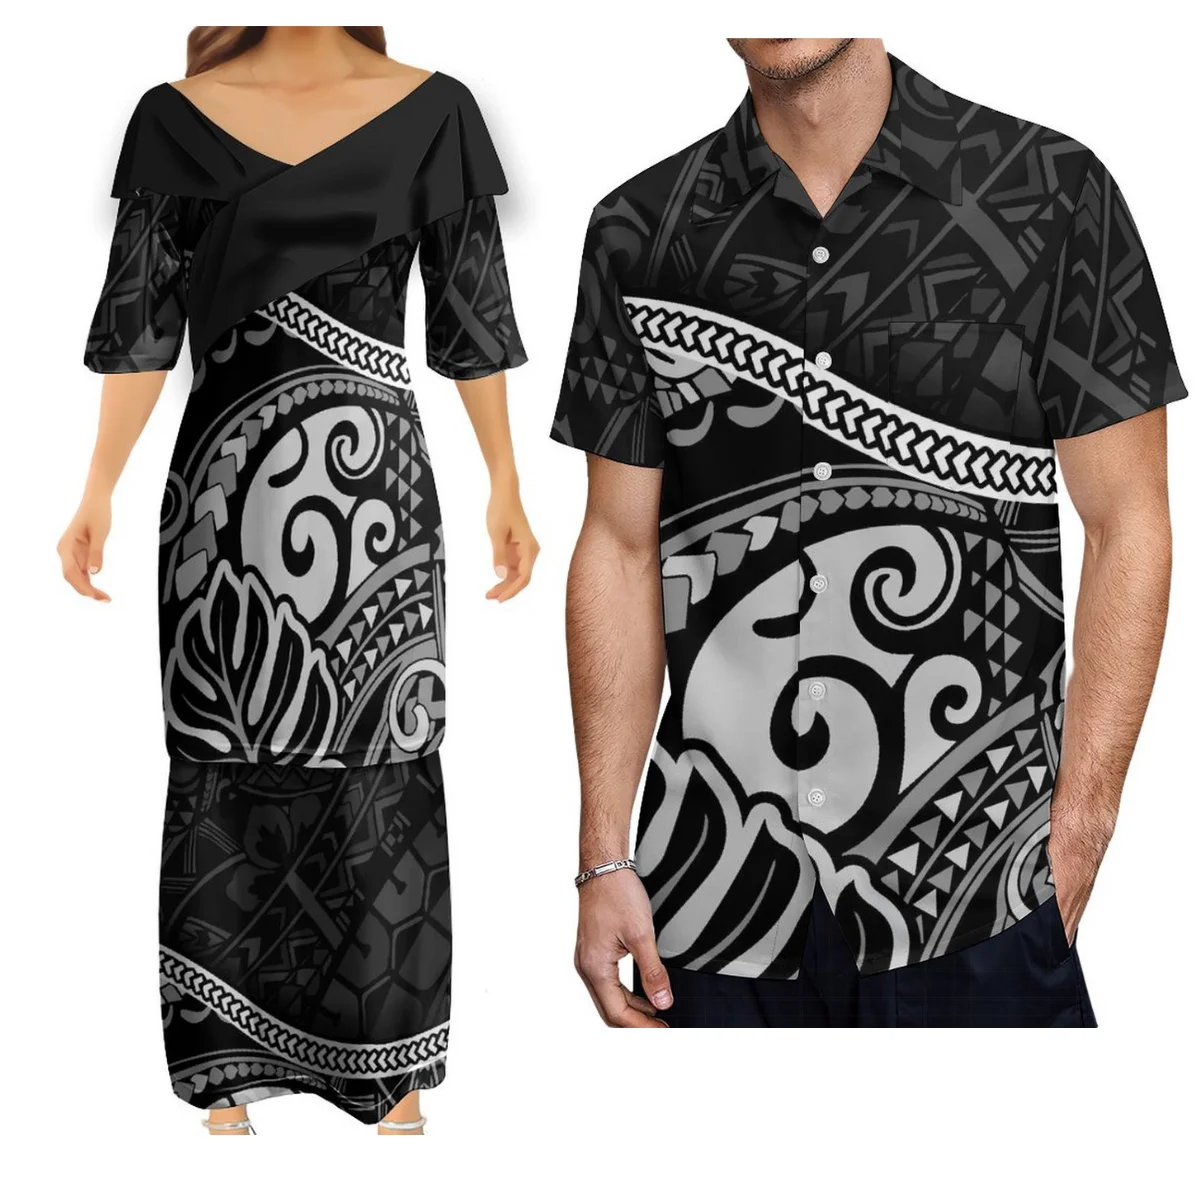 

Полинезийское племя парные костюмы рубашка с коротким рукавом для мужчин и элегантное платье для женщин Puletasi для женщин